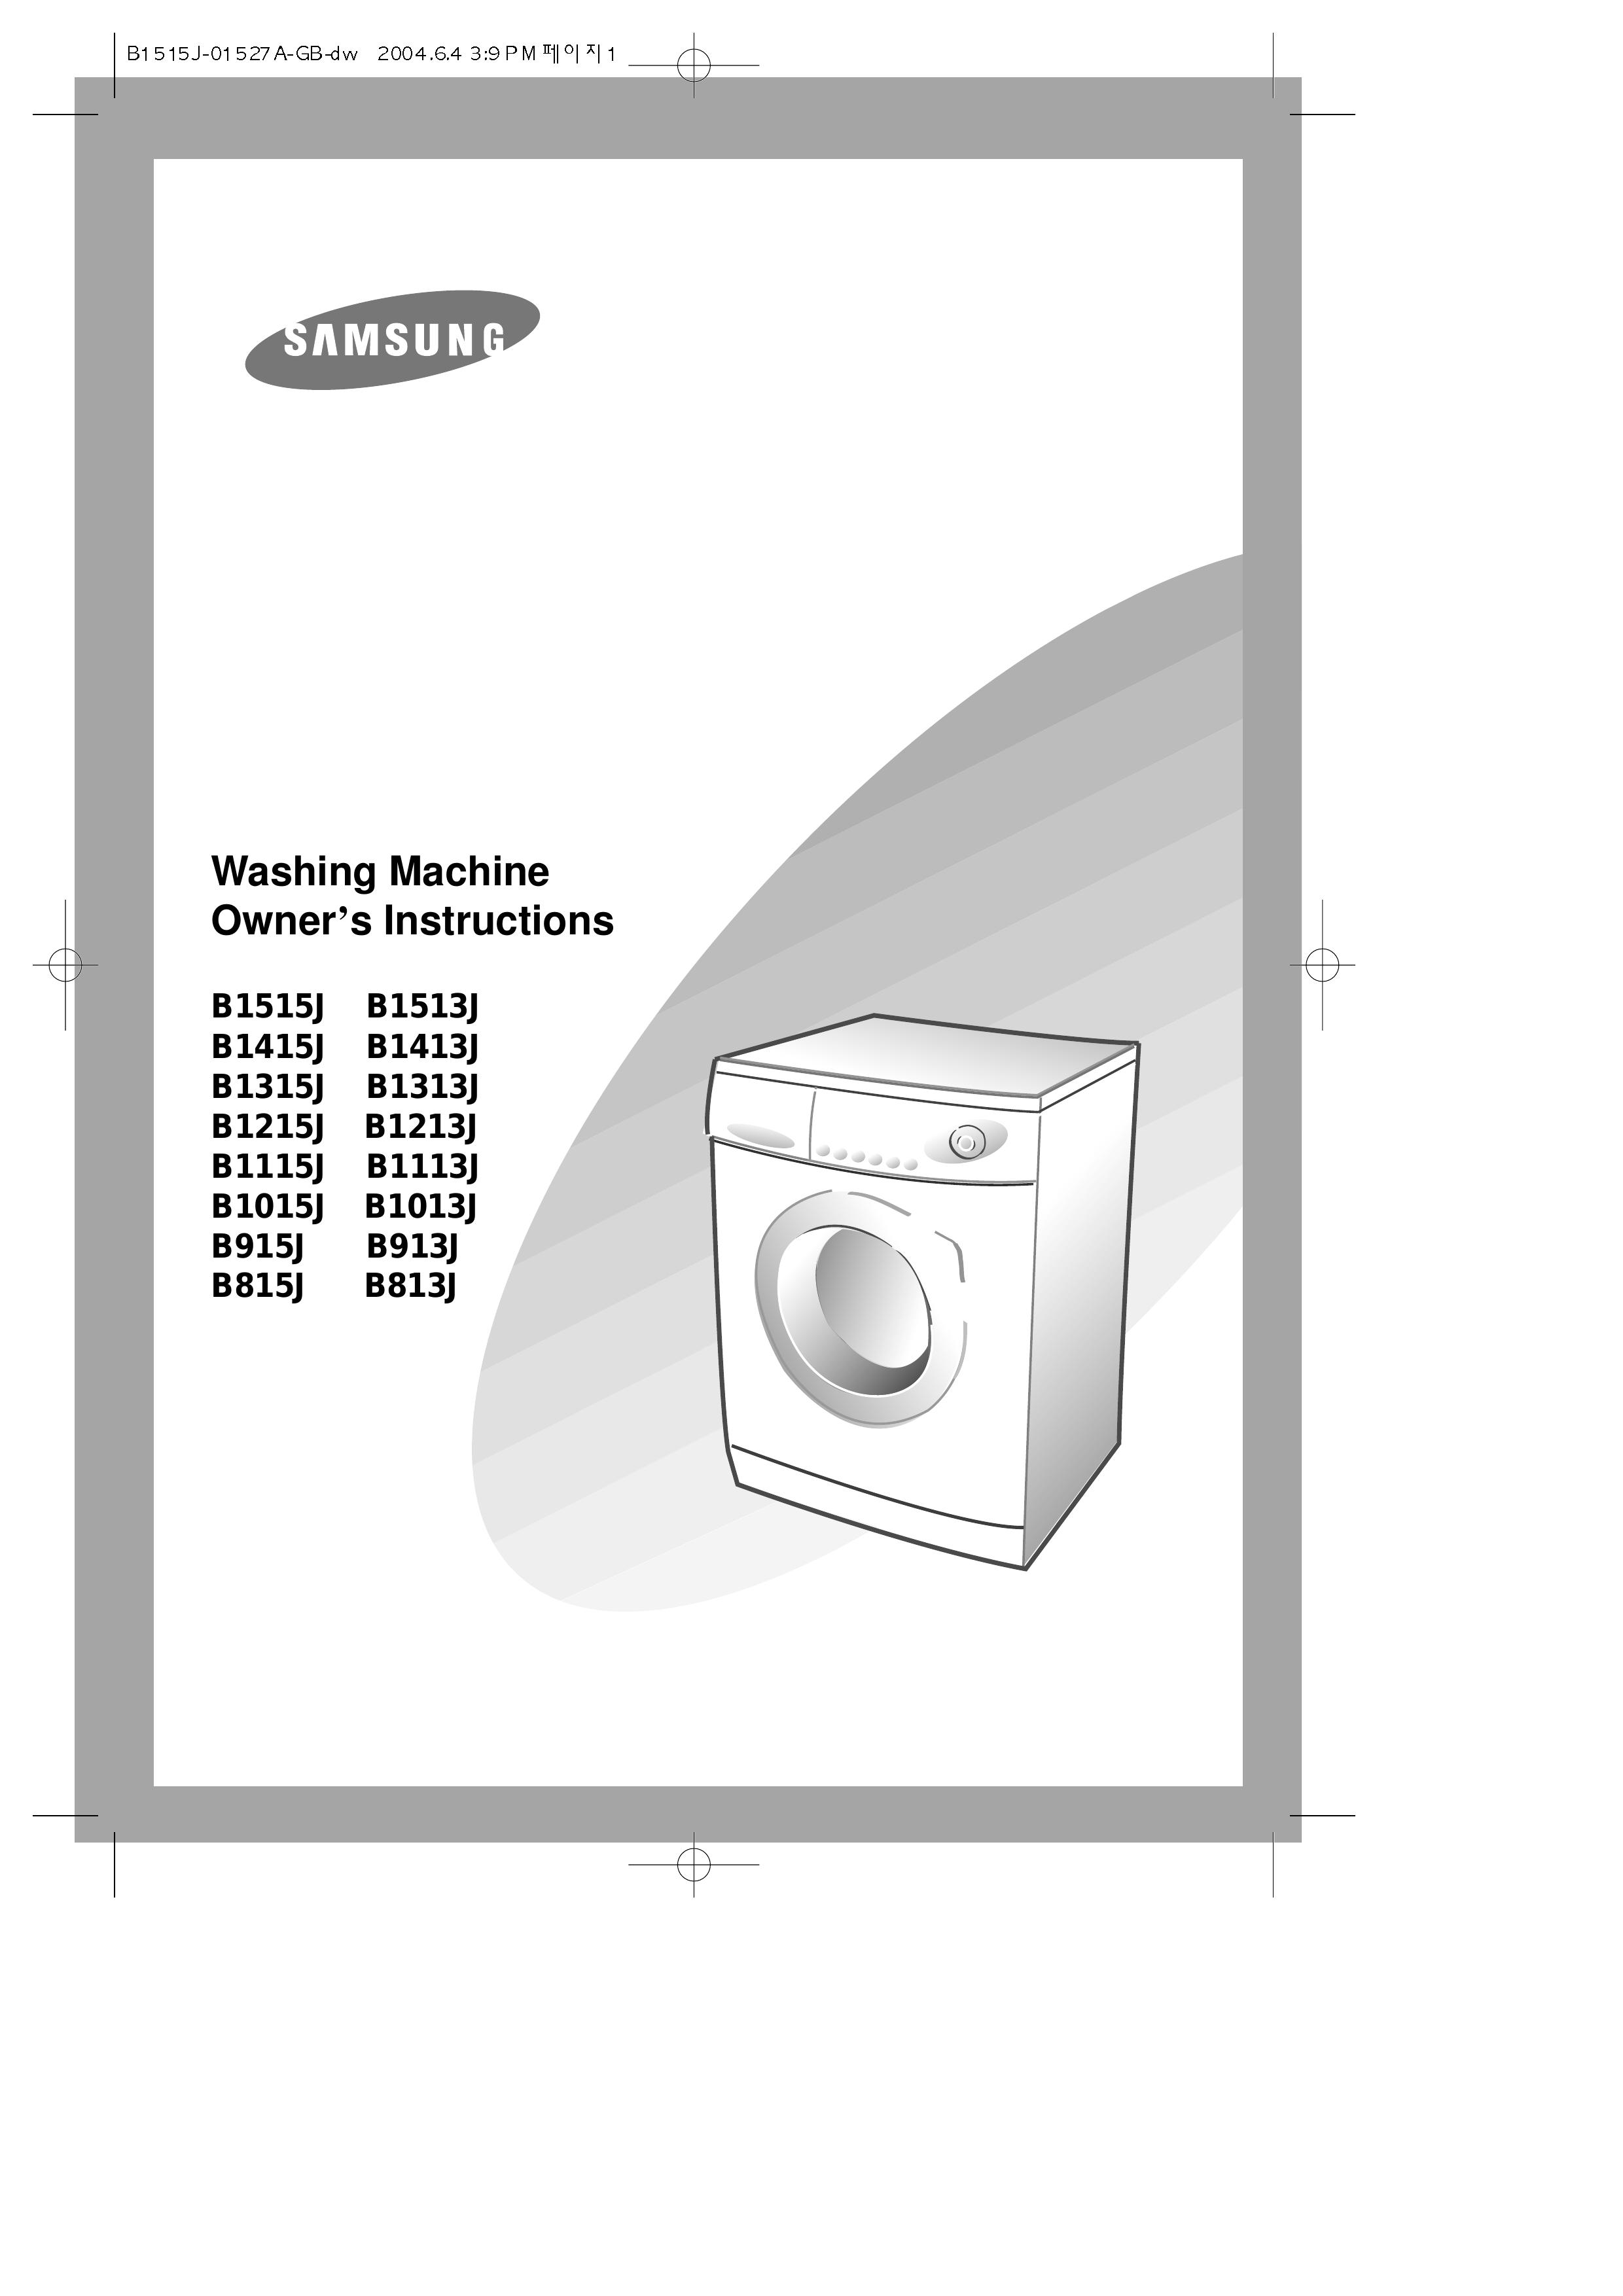 Samsung B1013J Washer User Manual